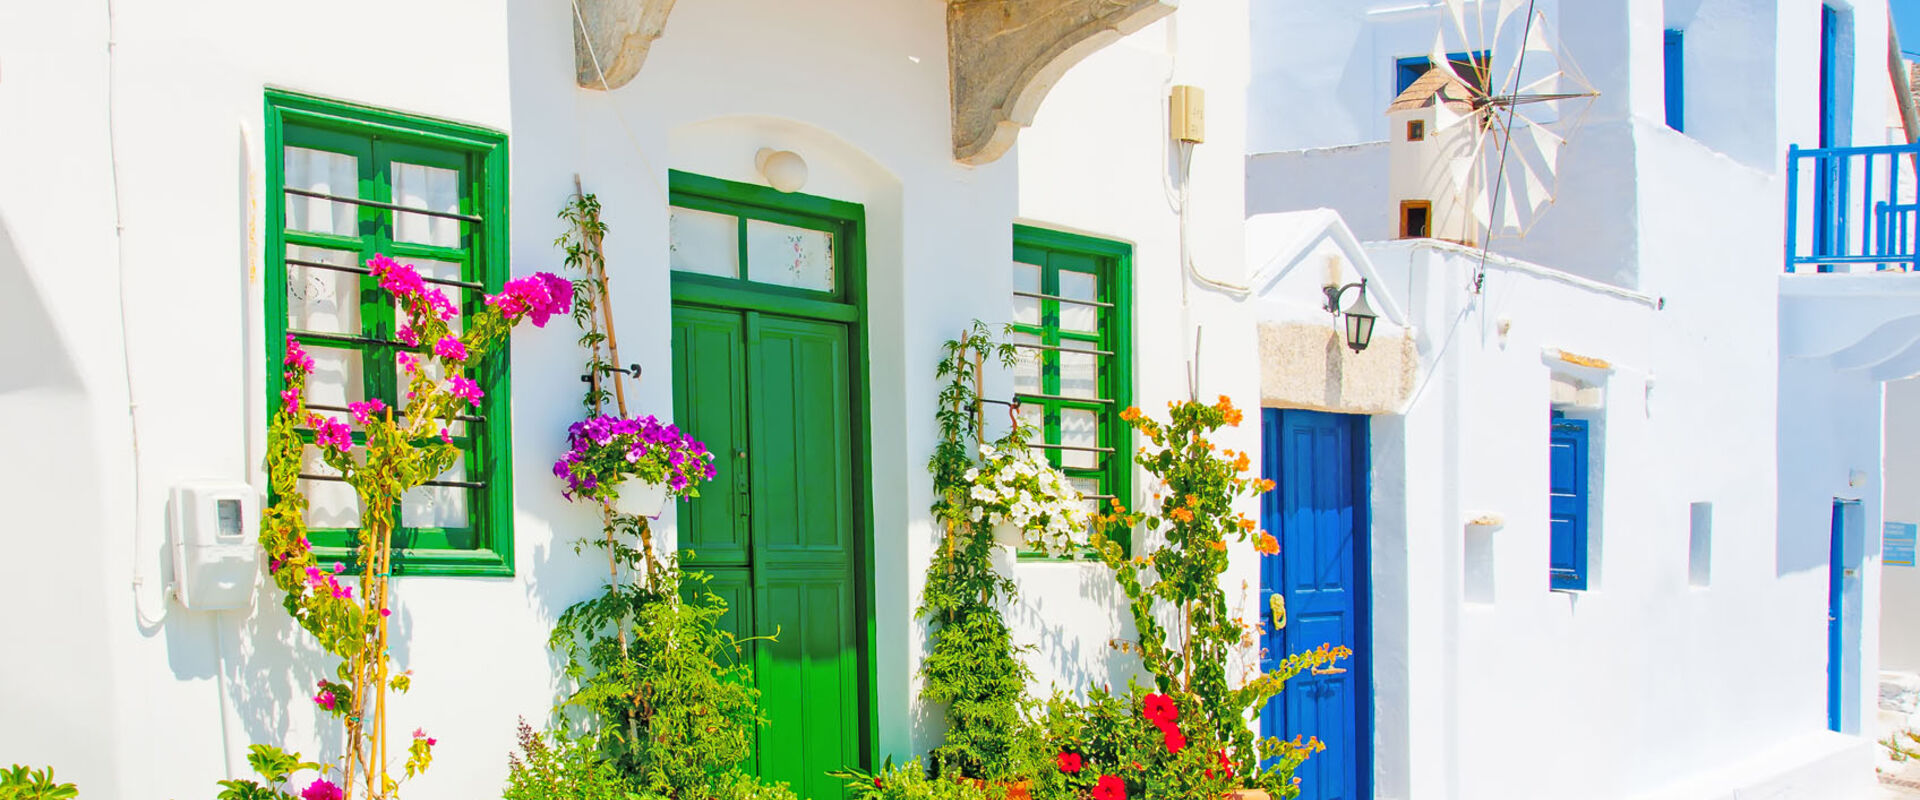 Островной стиль, белые дома с синими и зелеными окнами